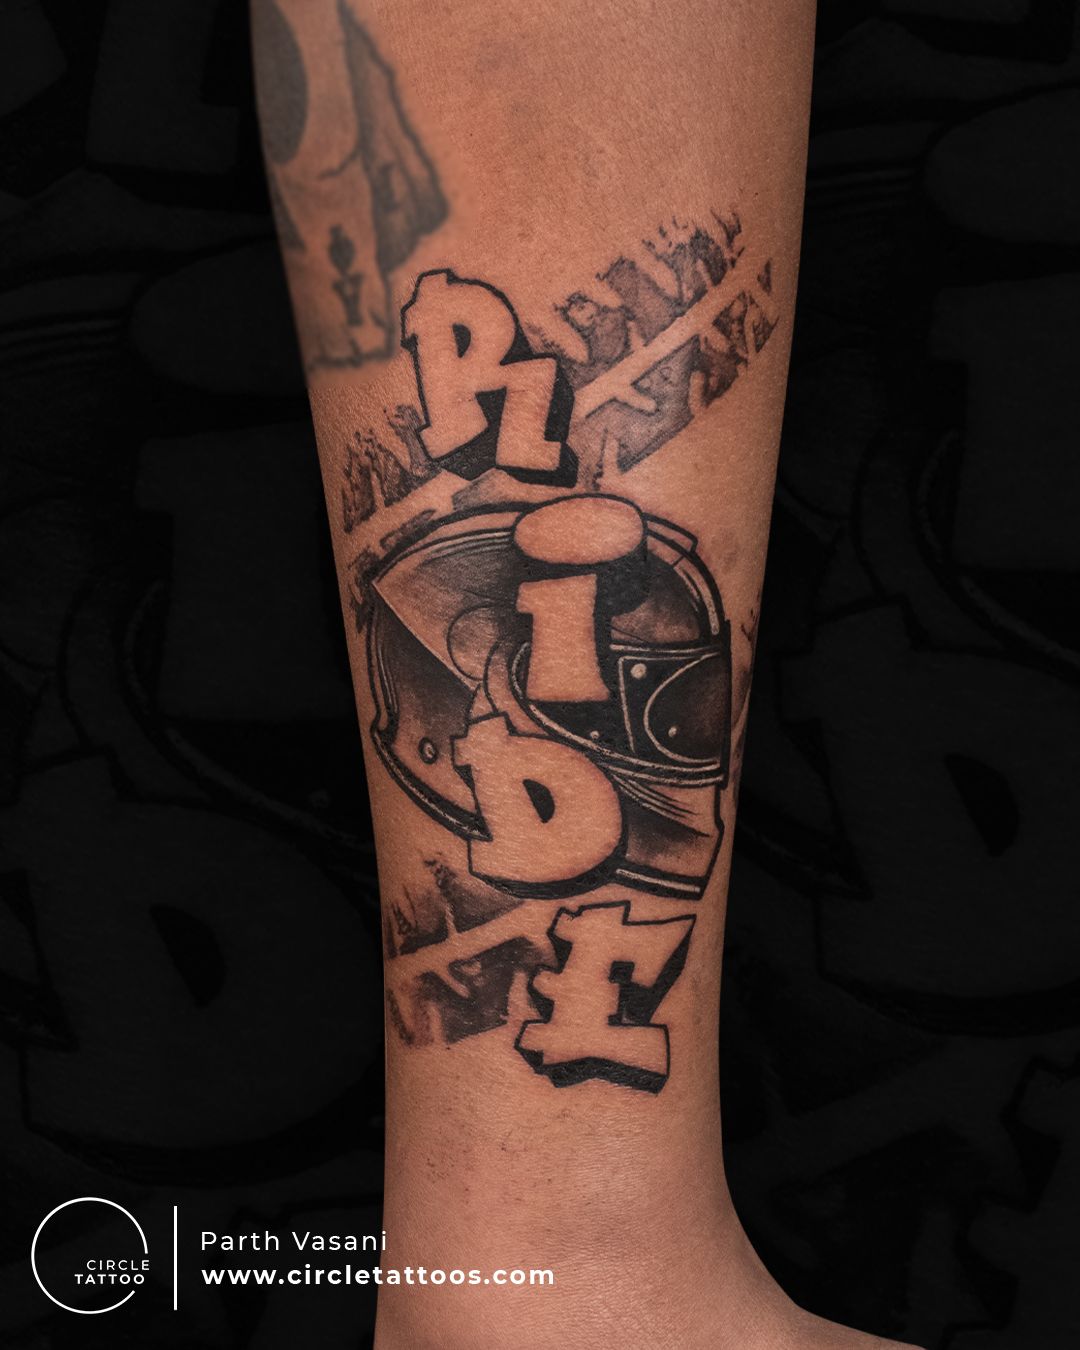 Parth Name Tattoo l l Ken's Tattoo Studio l Rajkot. - YouTube